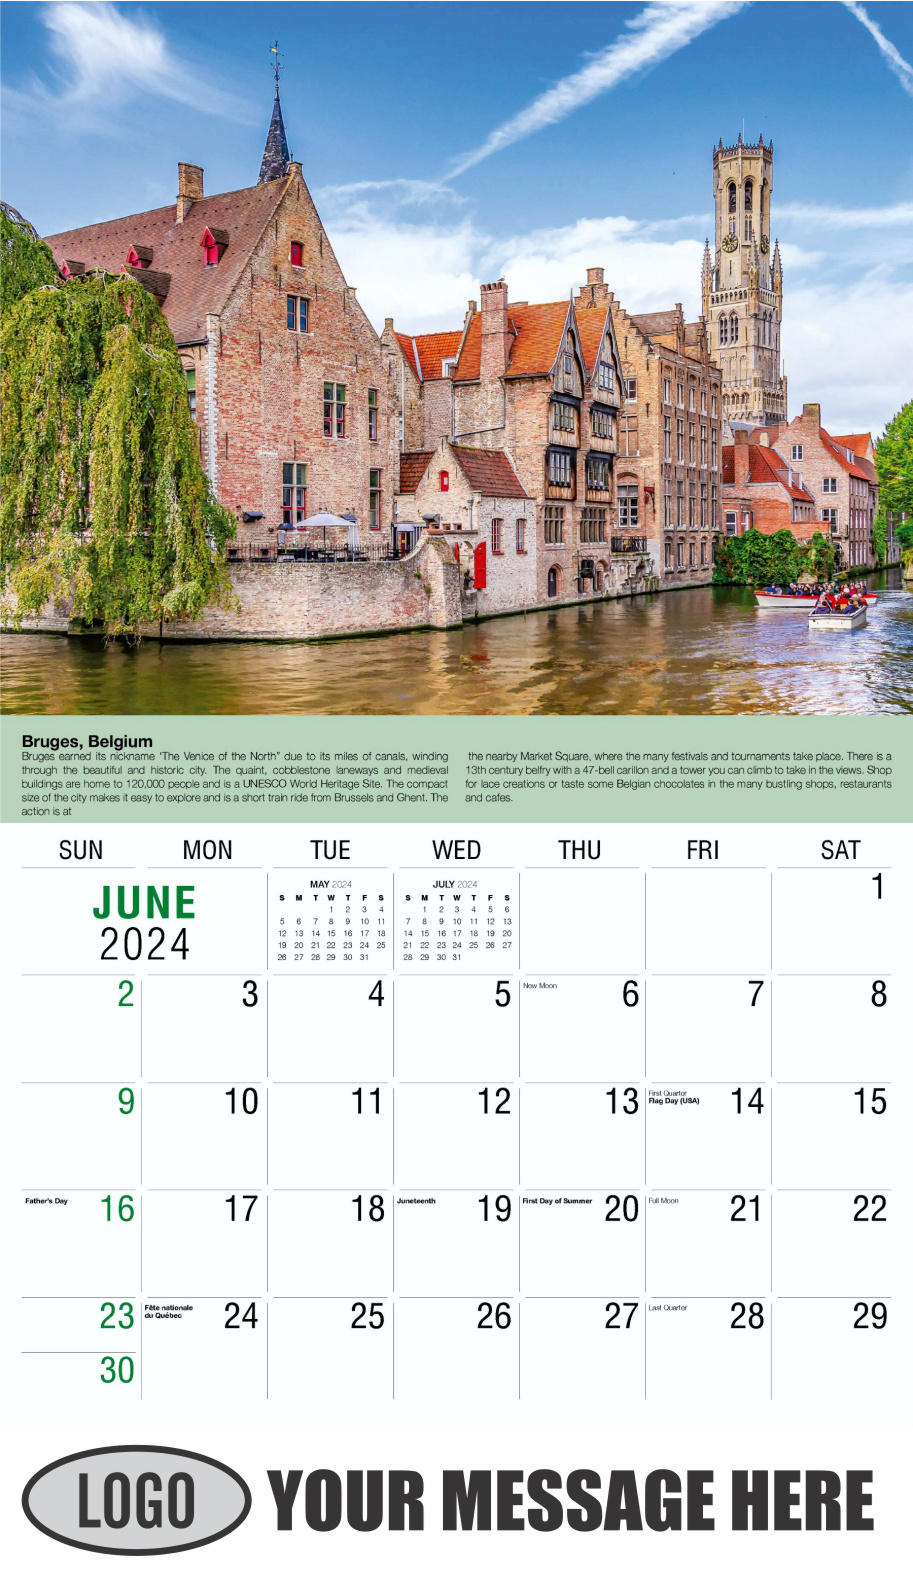 World Travel 2024 Business Advertising Wall Calendar - June